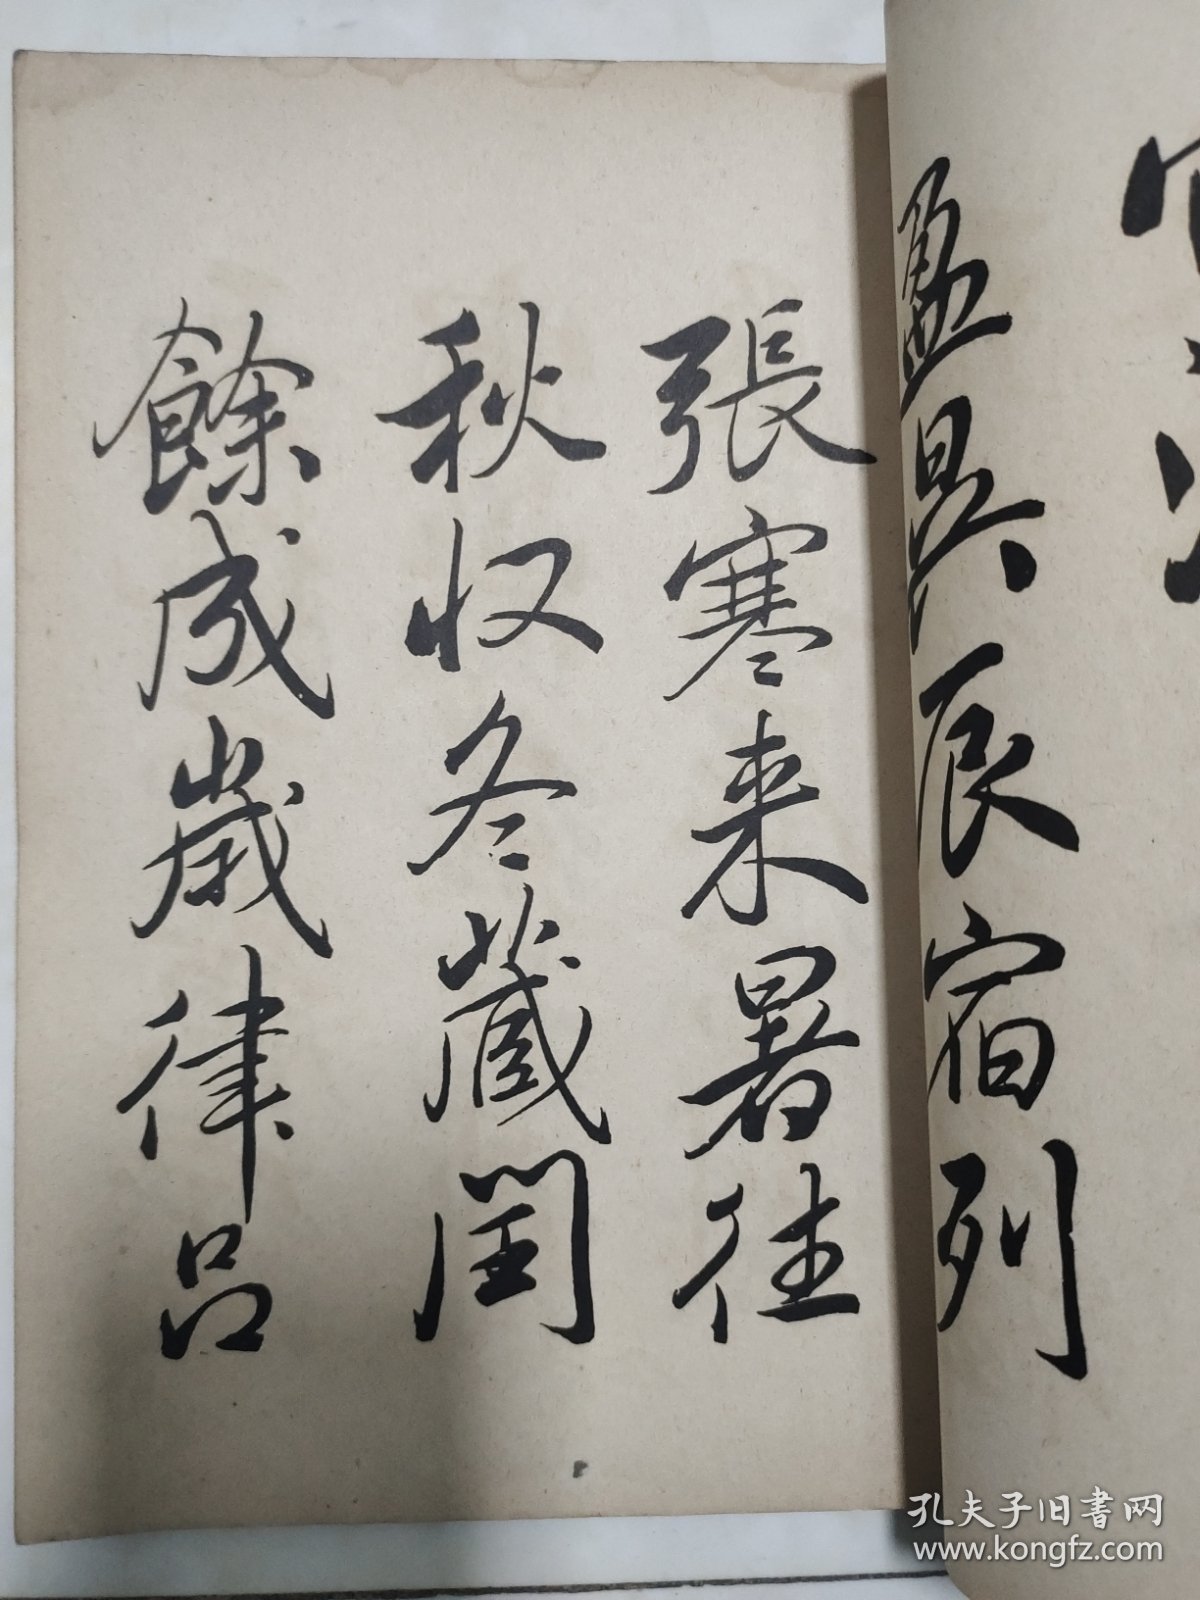 昭和十二年日本平凡社发行《赖山阳米法千字文》